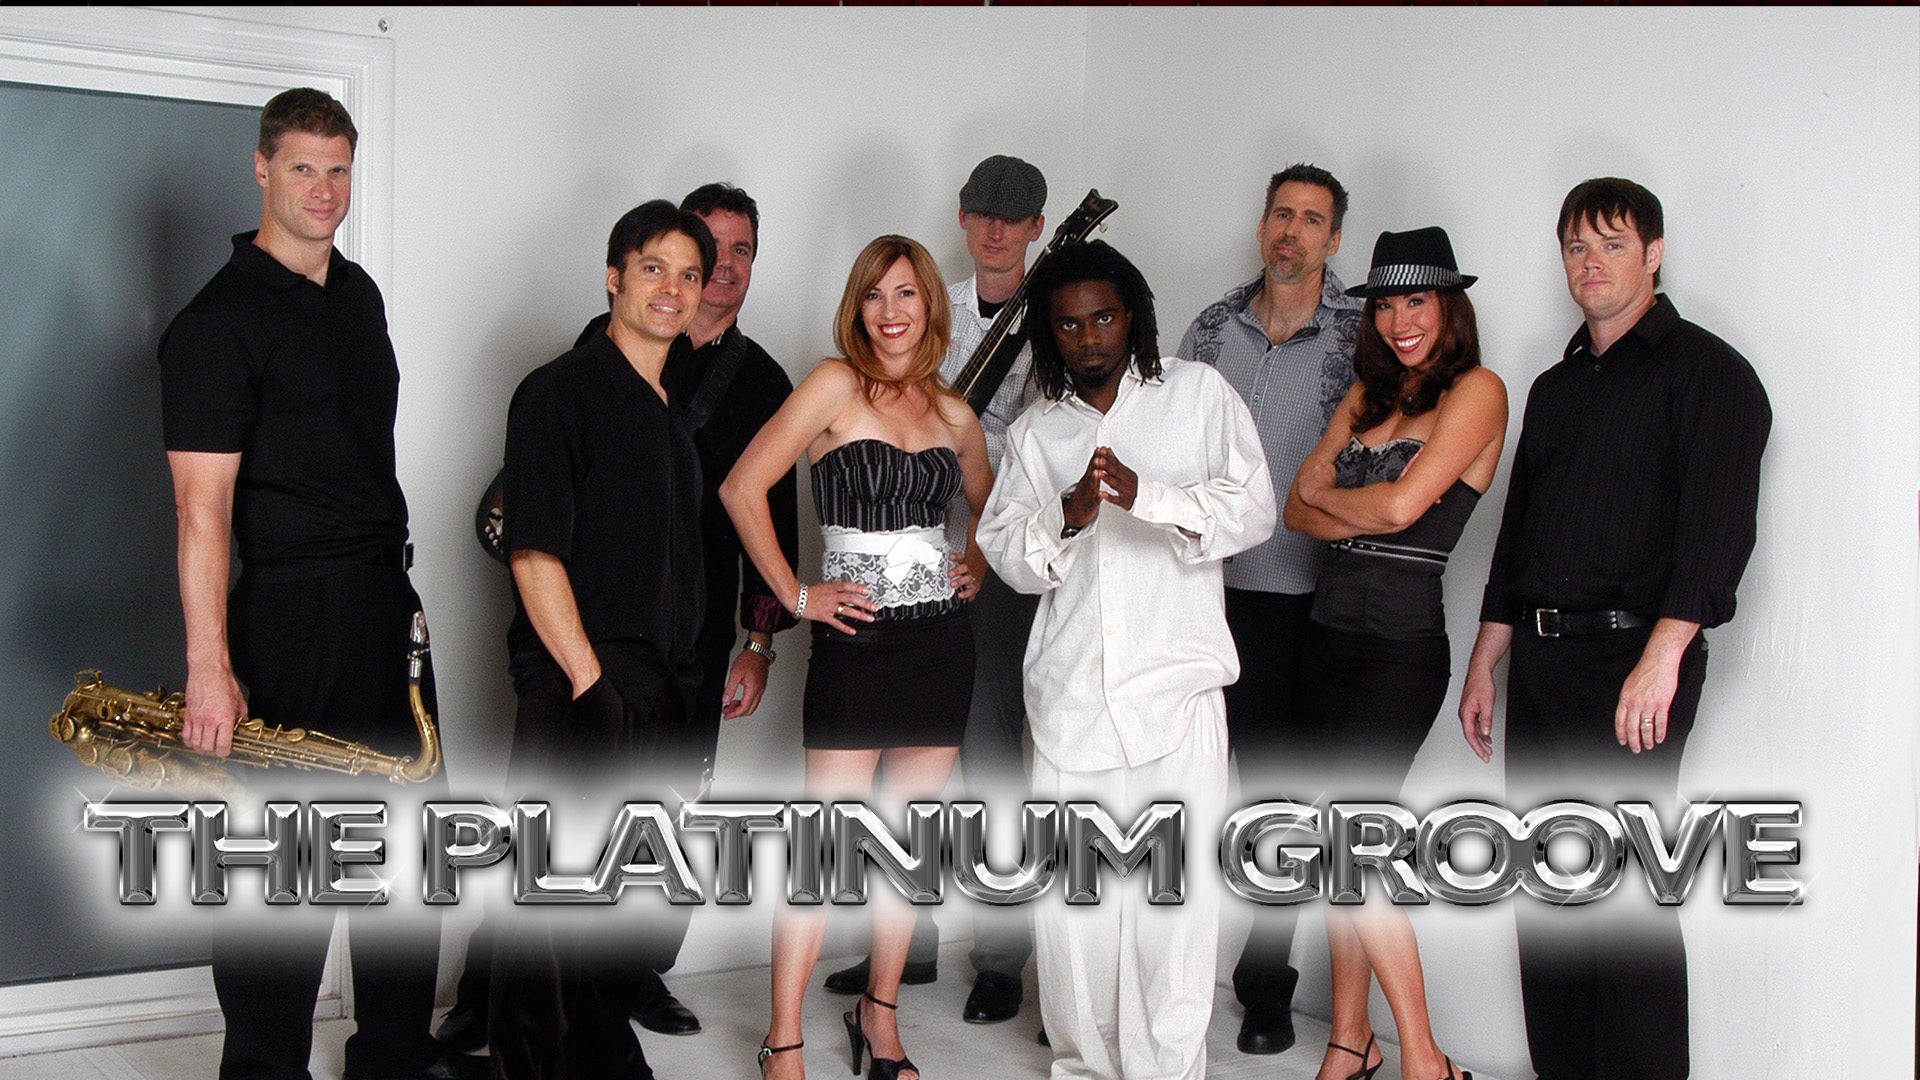 The Platinum Groove